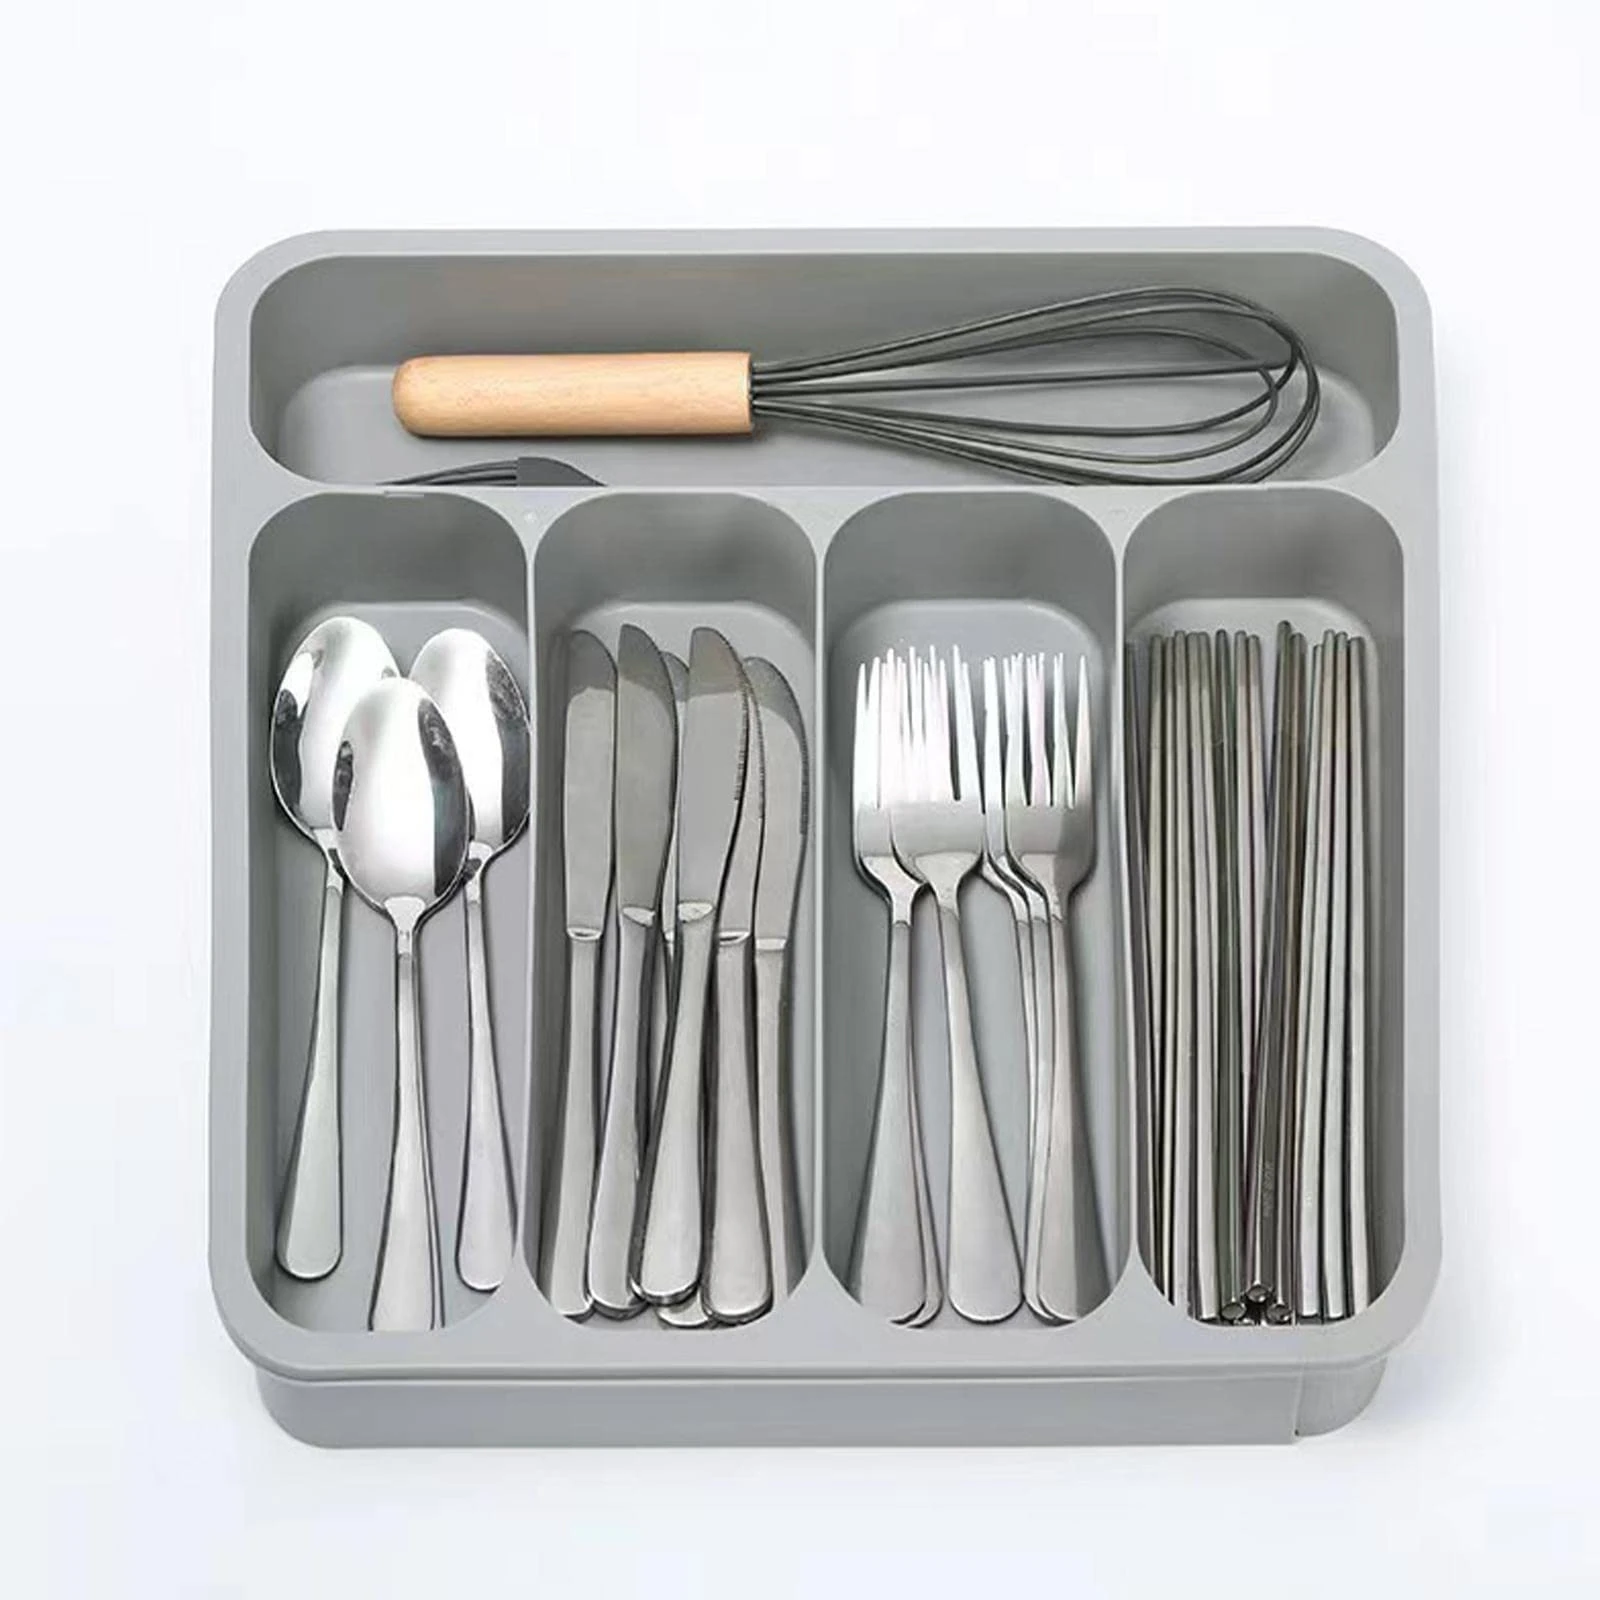 silverware organizer for drawer flatware organizer for drawer utensil organizer kitchen accessories